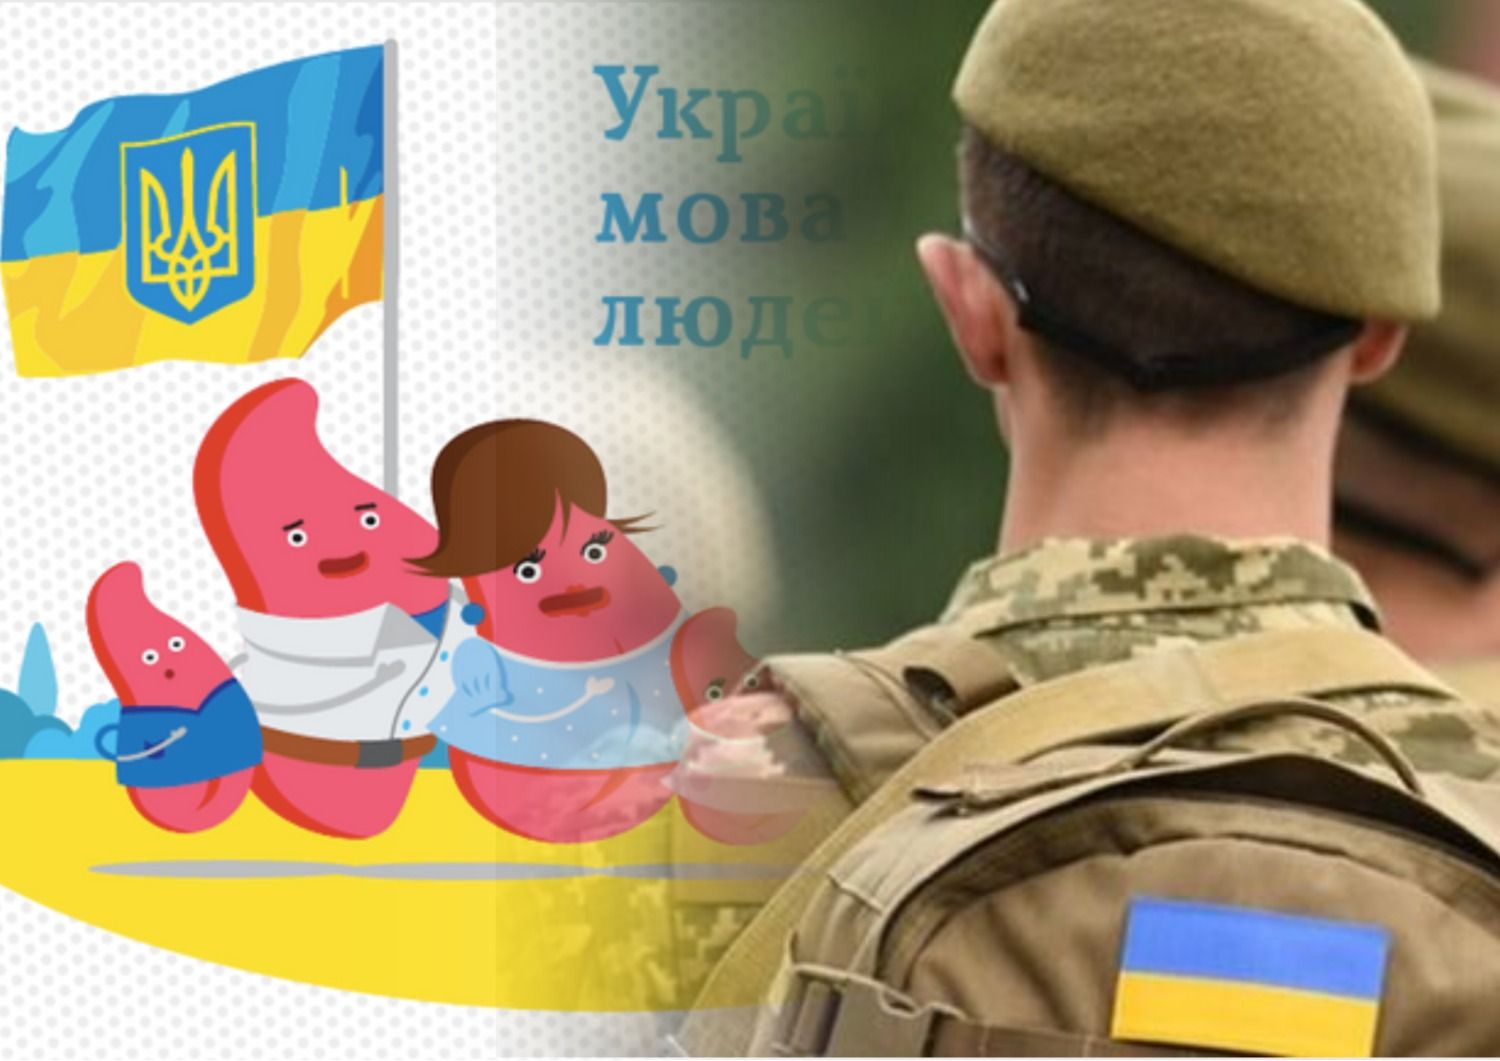 Антисуржик - мобилизация в Украине - как правильно говорить по-украински о мобилизации - Образование